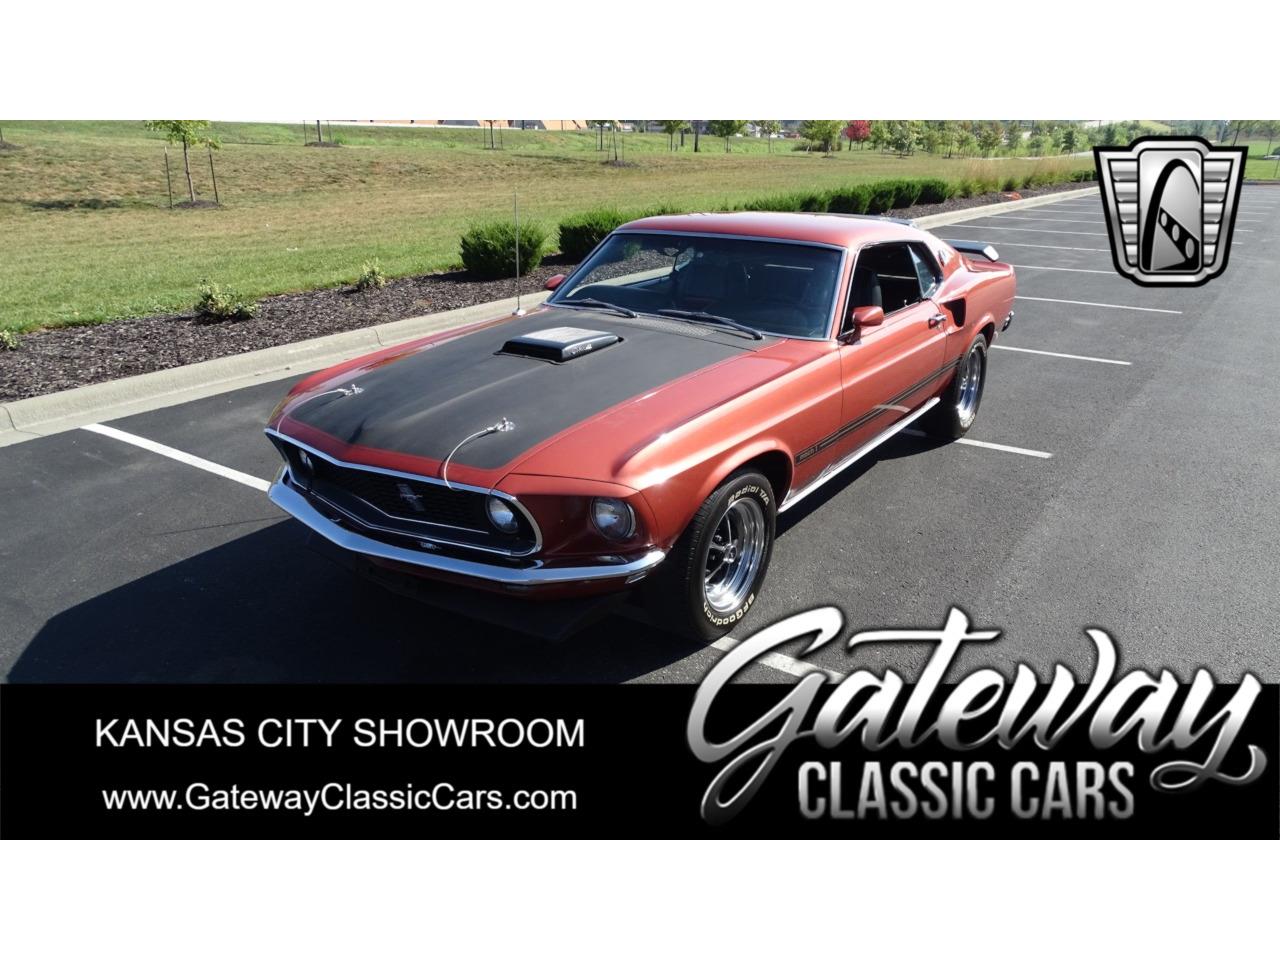 For Sale: 1969 Ford Mustang in O'Fallon, Illinois for sale in O Fallon, IL